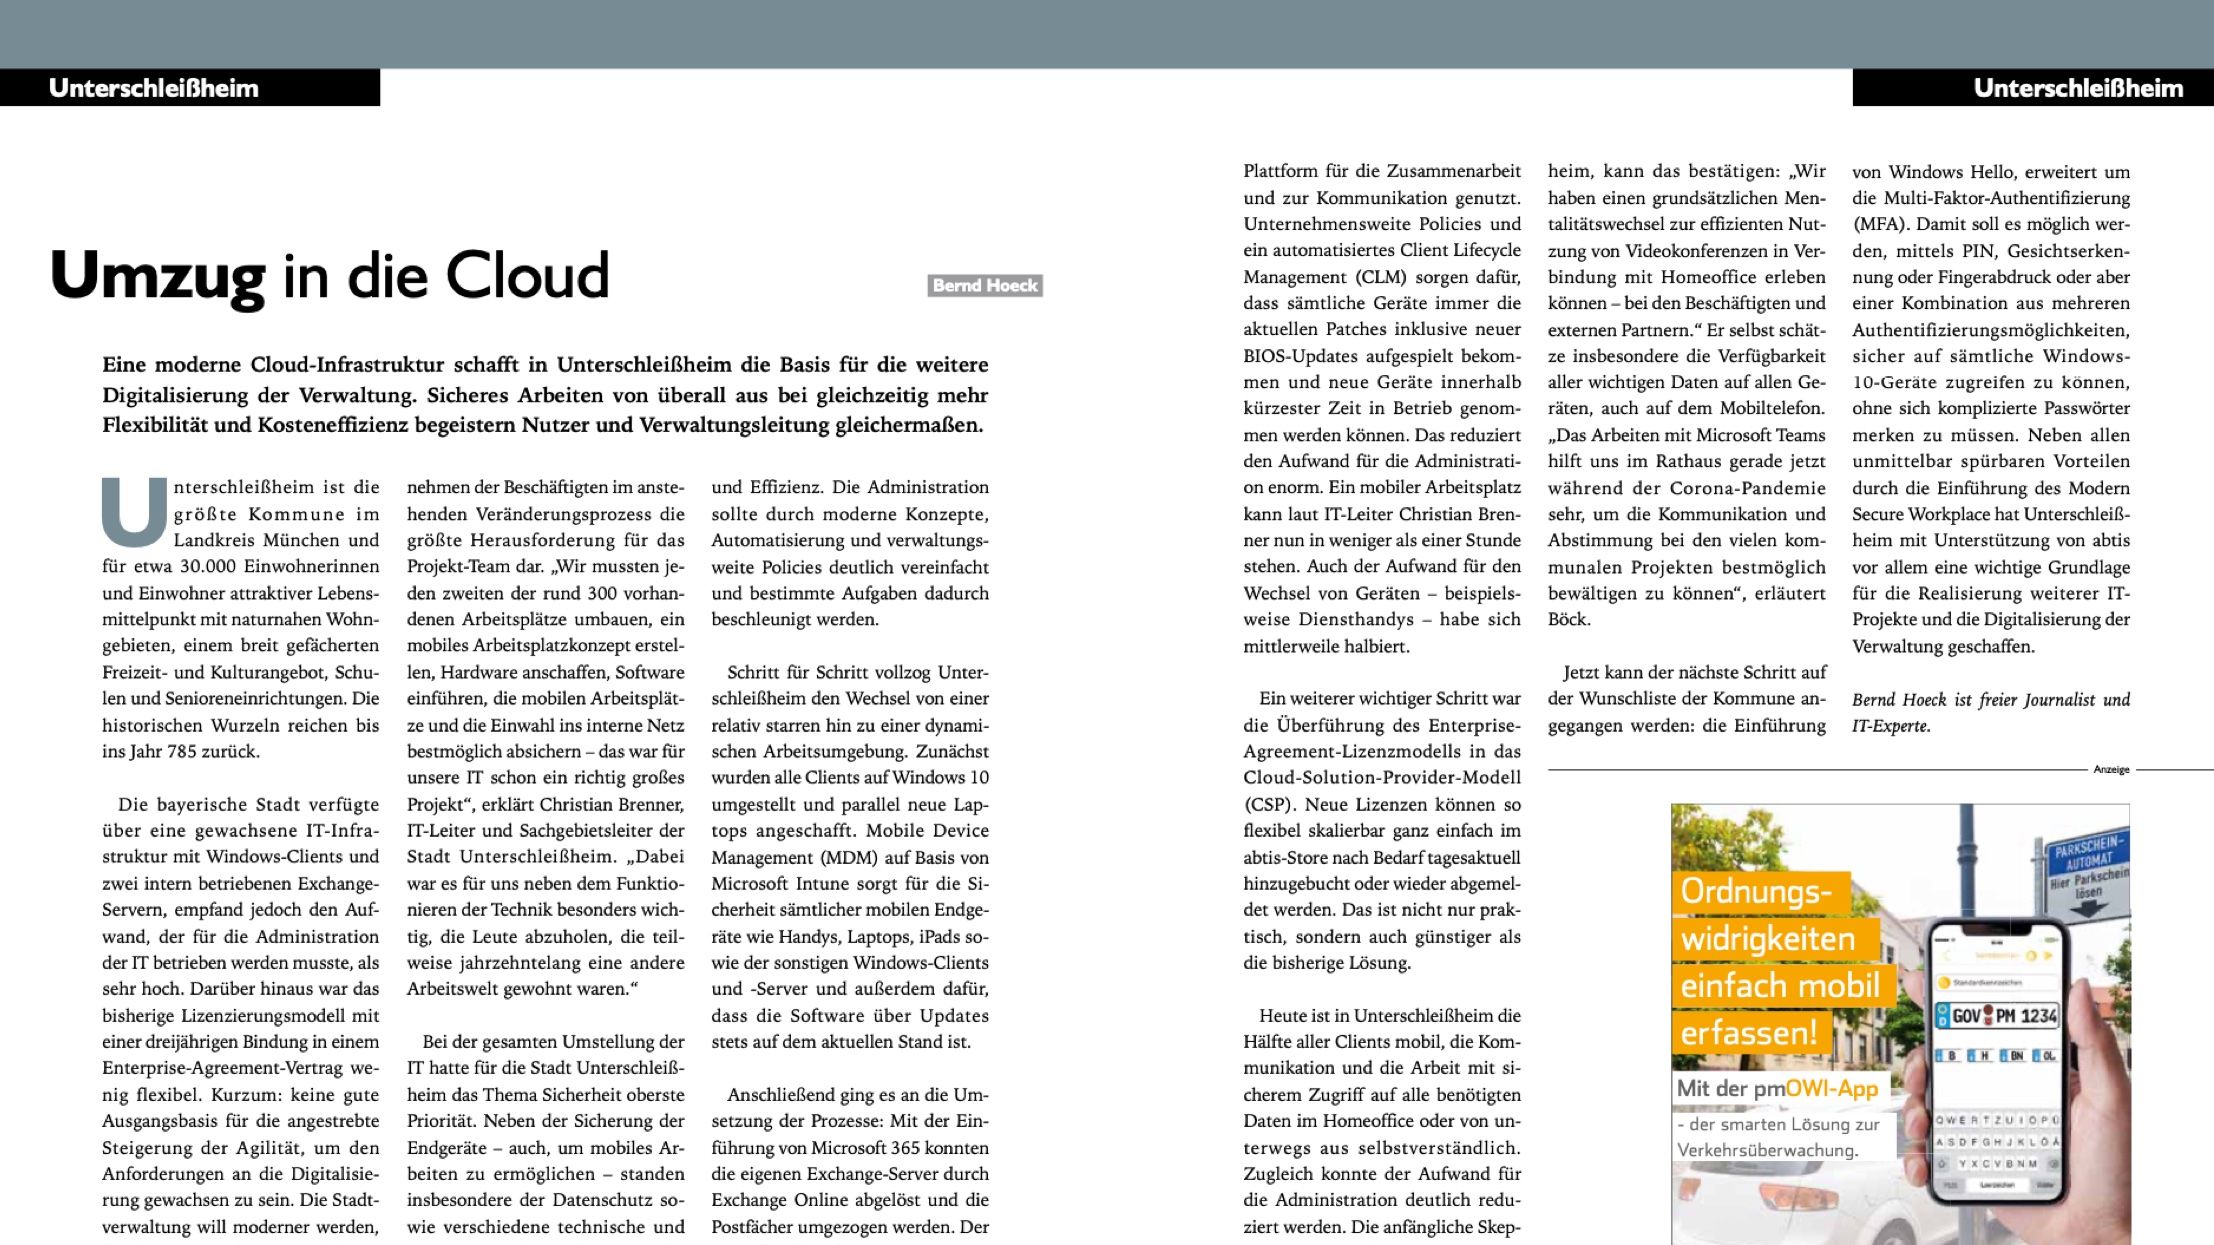 Artikel "Umzug in die Cloud" in Kommune 21